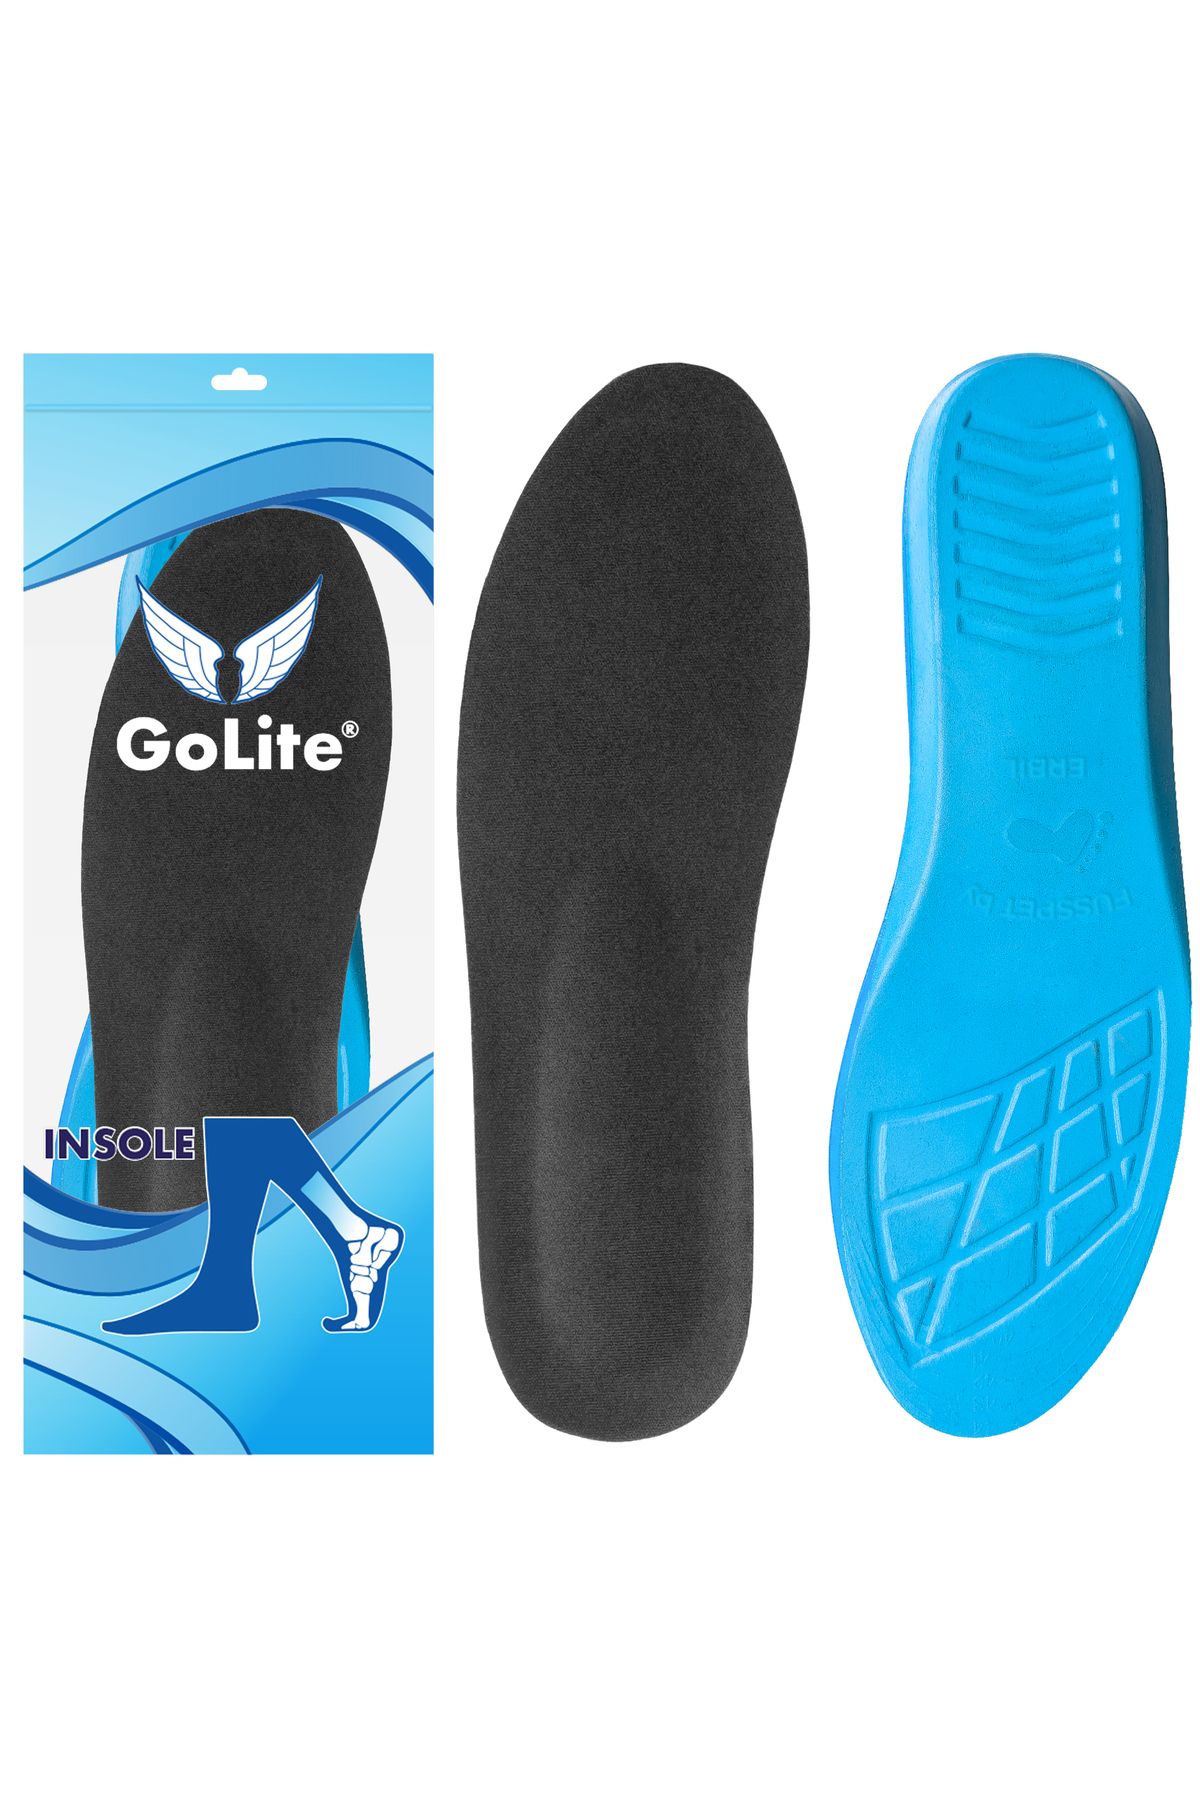 GoLite Spor Ayakkabı Tabanlığı, Günlük Memory Foam Hafızalı Sneaker Ayakkabı Tabanlık - M22 Insole